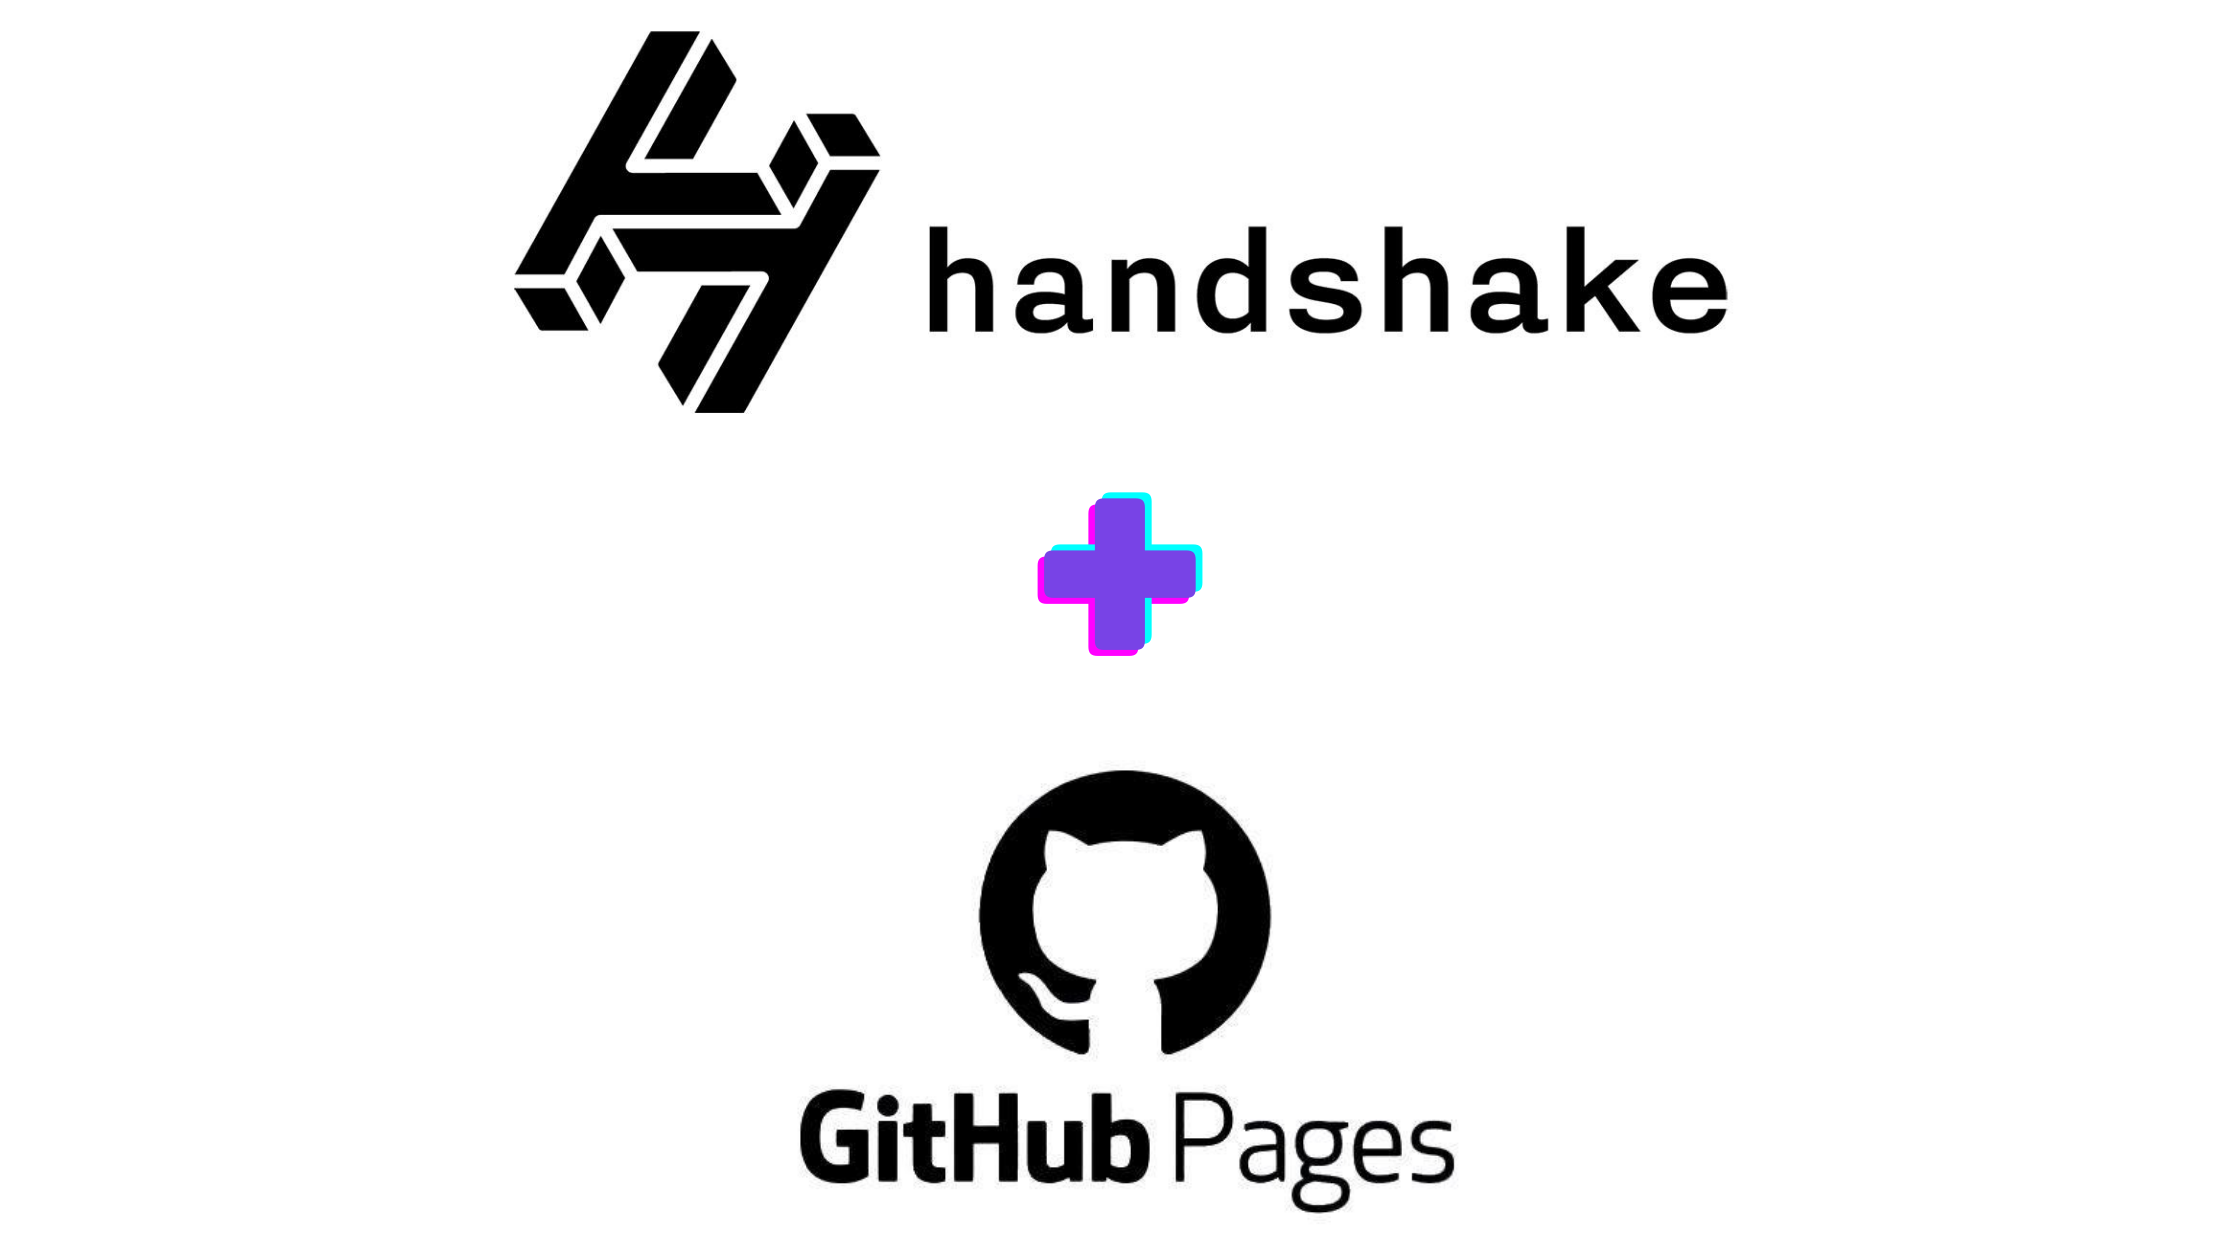 Handshake and GitHub